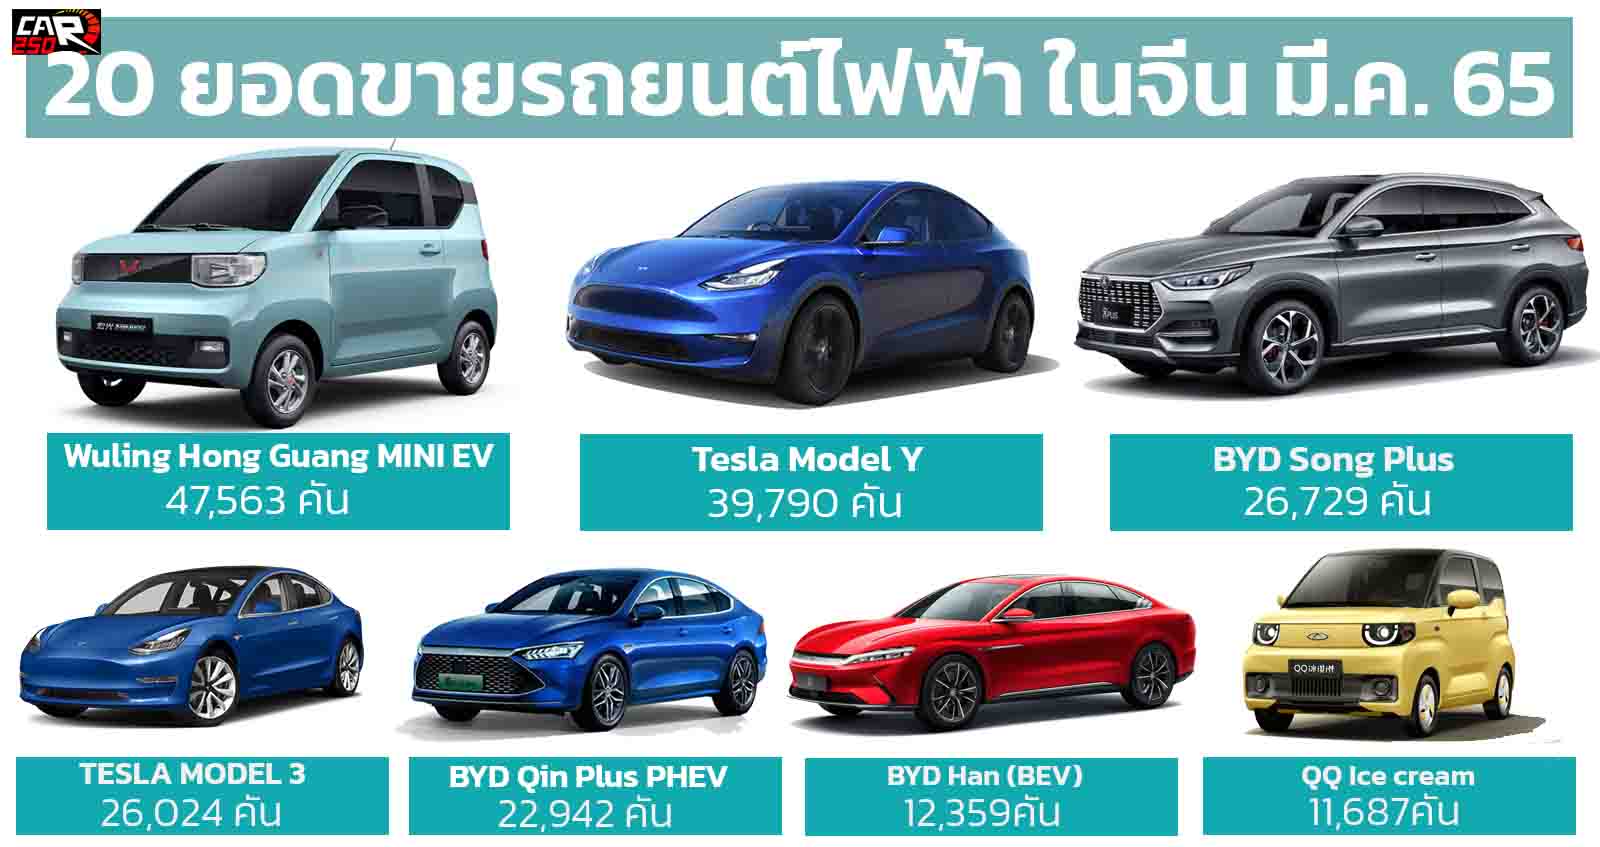 20 รถยนต์ไฟฟ้า ขายดีในจีน มีนาคม 2022 Wulling MINI EV ยังคงเป็นเจ้าตลาด